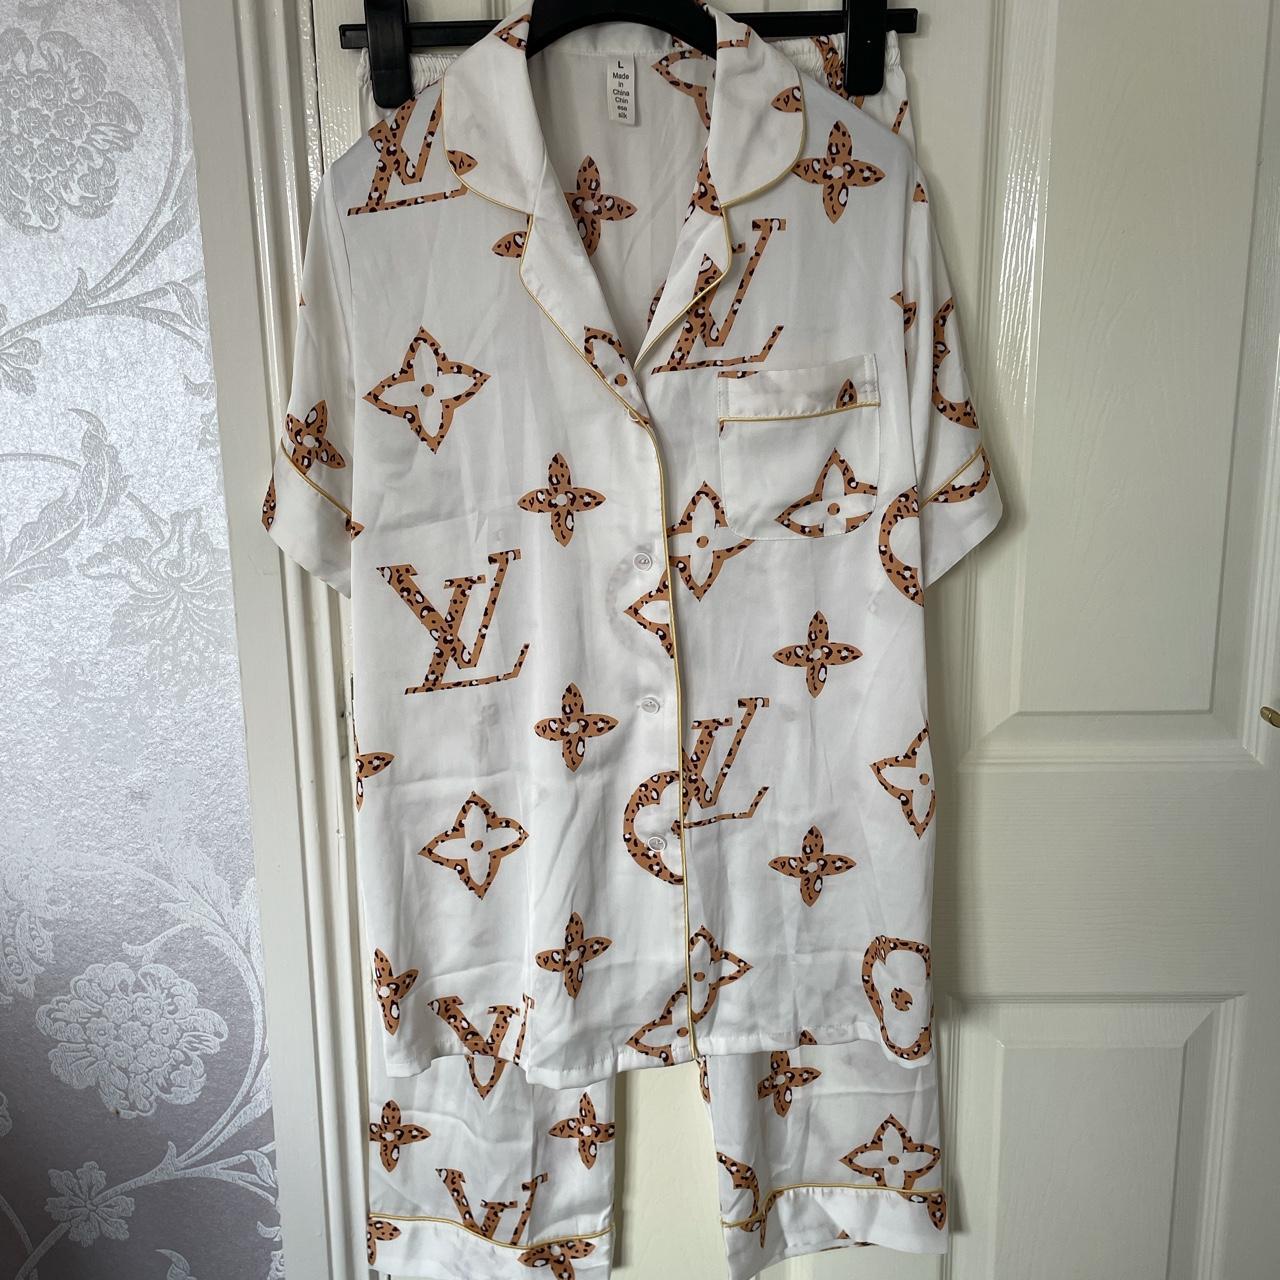 Ladies 2 piece Louis Vuitton pyjama set Never worn - Depop